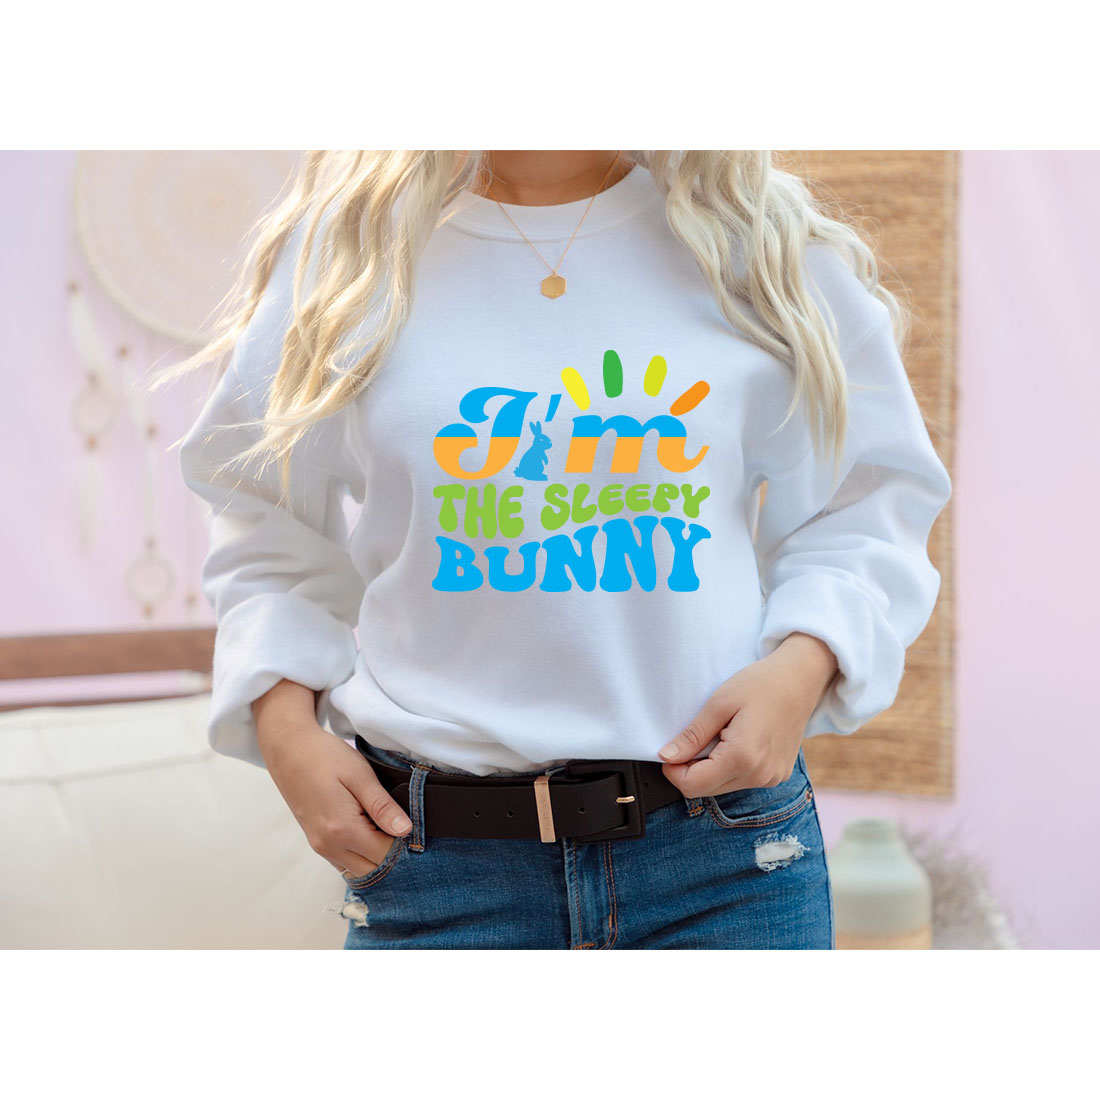 I'm the sleepy Bunny Retro T-Shirt Designs cover image.